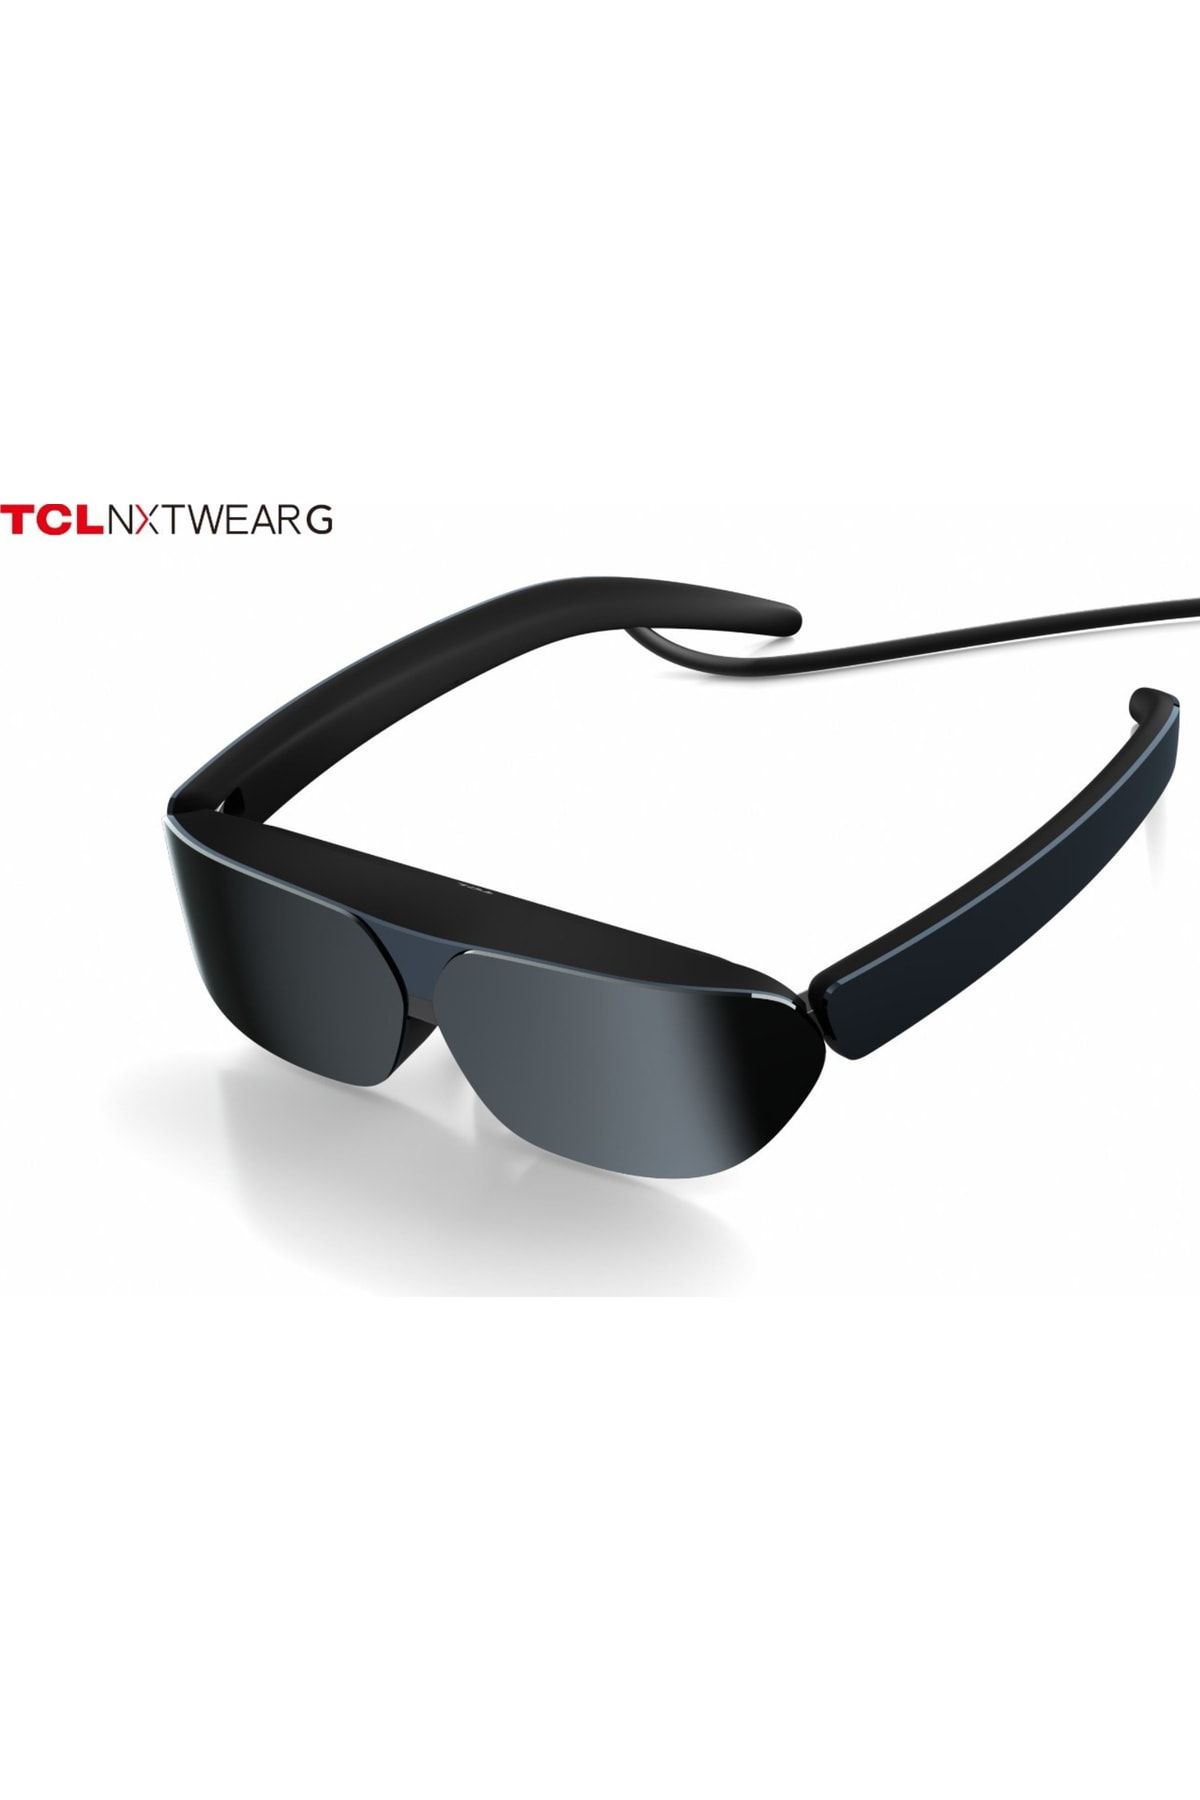 TCL Nxtwear-g Akıllı Gözlük